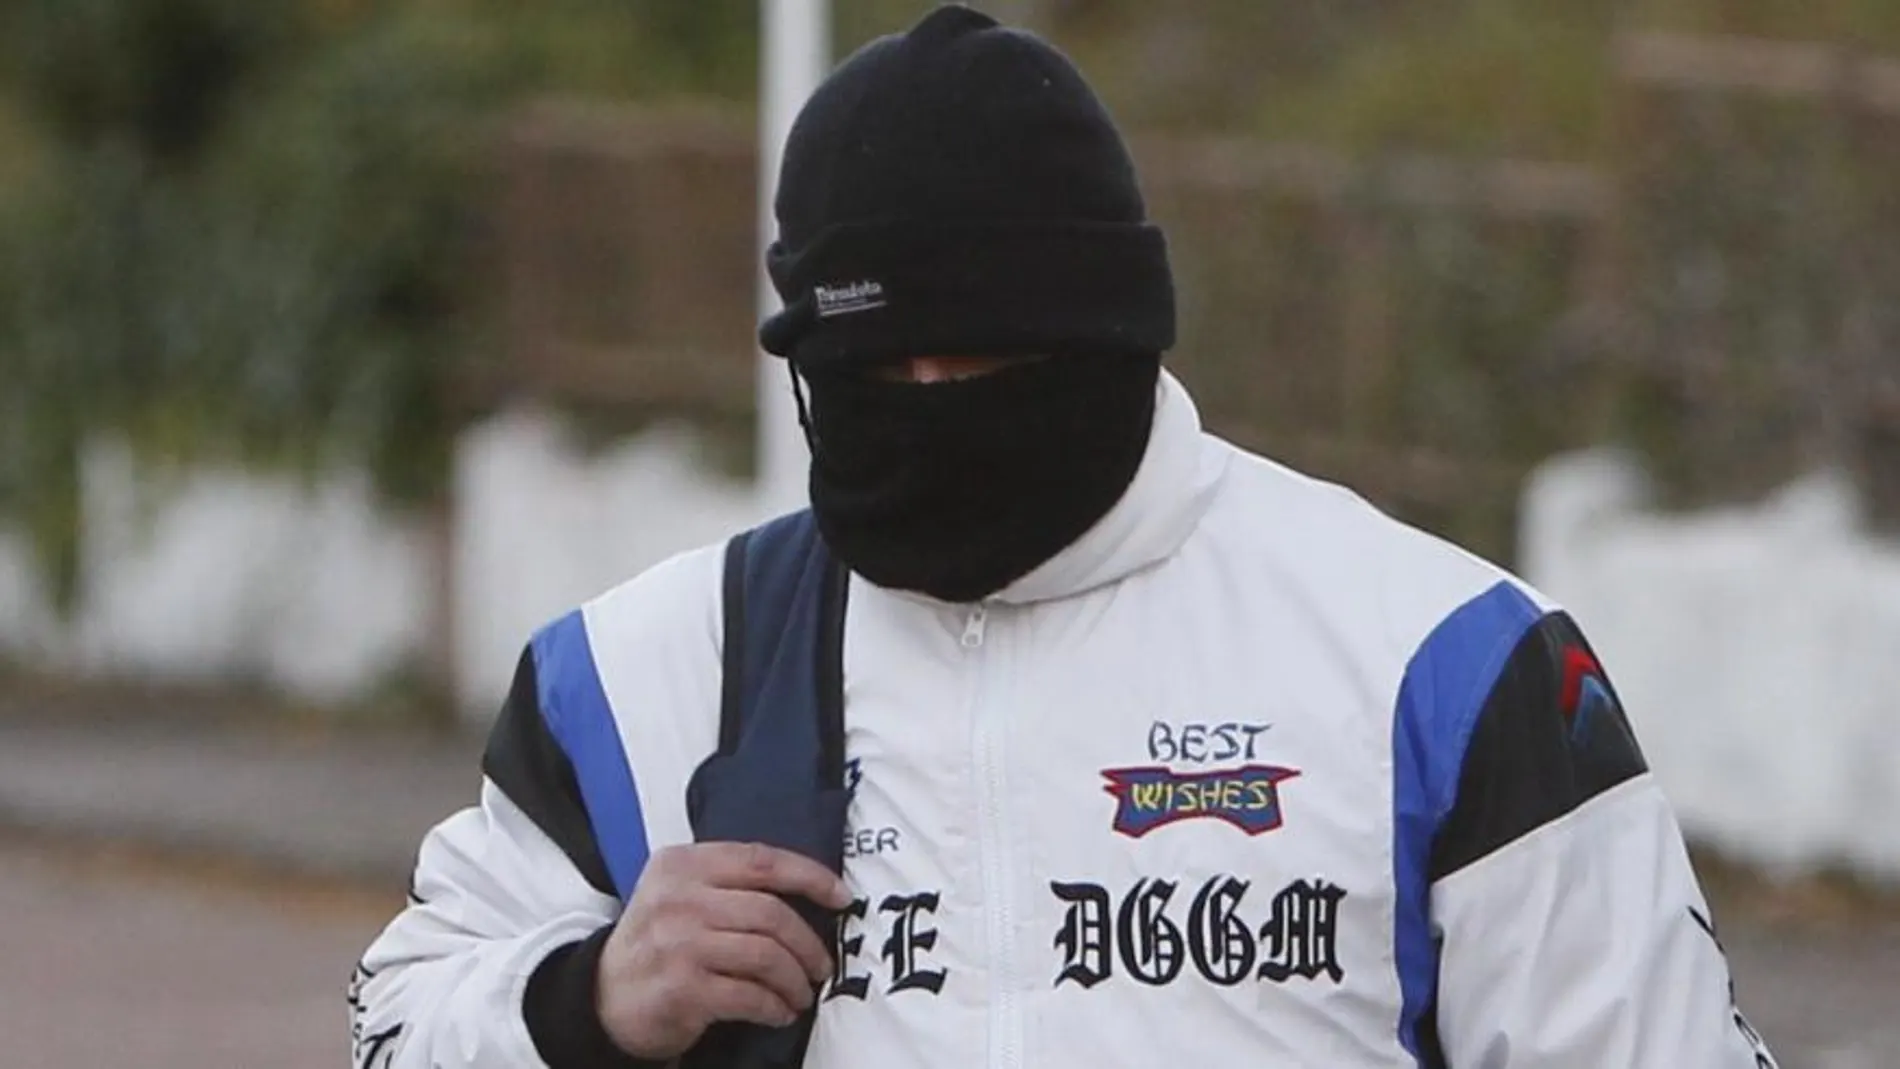 Miguel Ricart ha su salida de prisión cubriendo su rostro con un pasamontañas